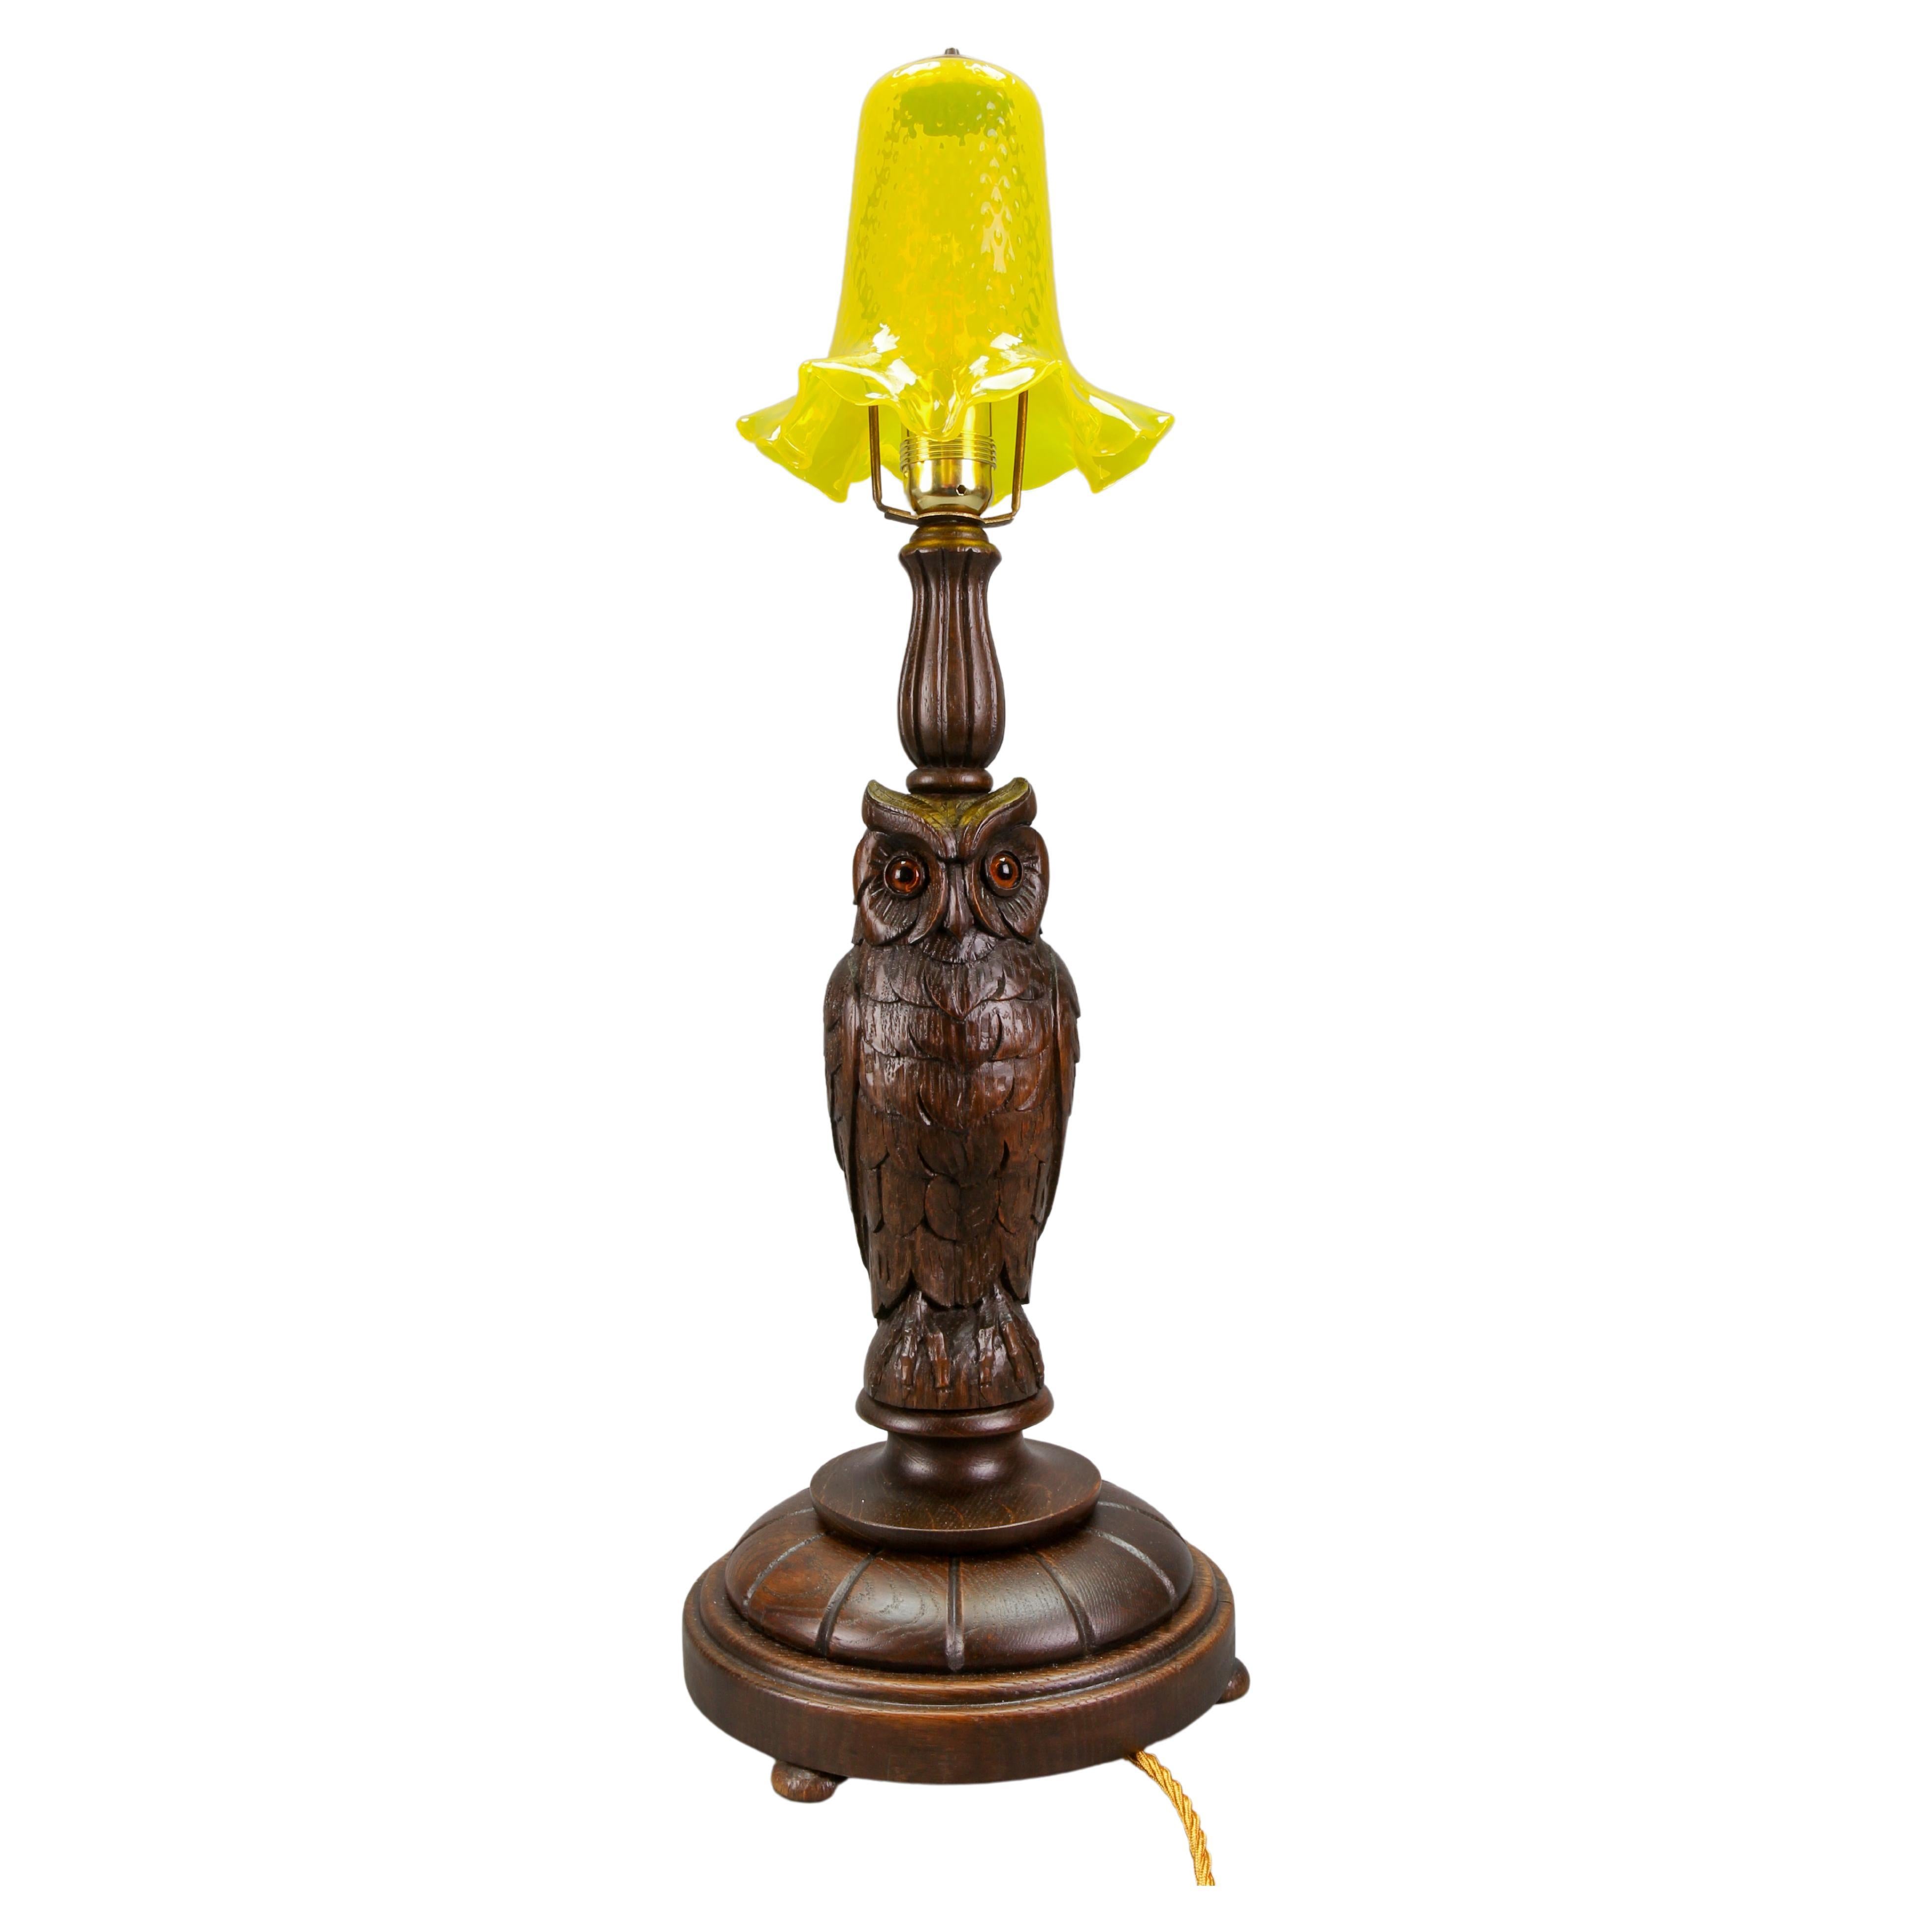 Lampe de bureau Art déco avec sculpture de hibou et abat-jour en verre jaune, vers 1920